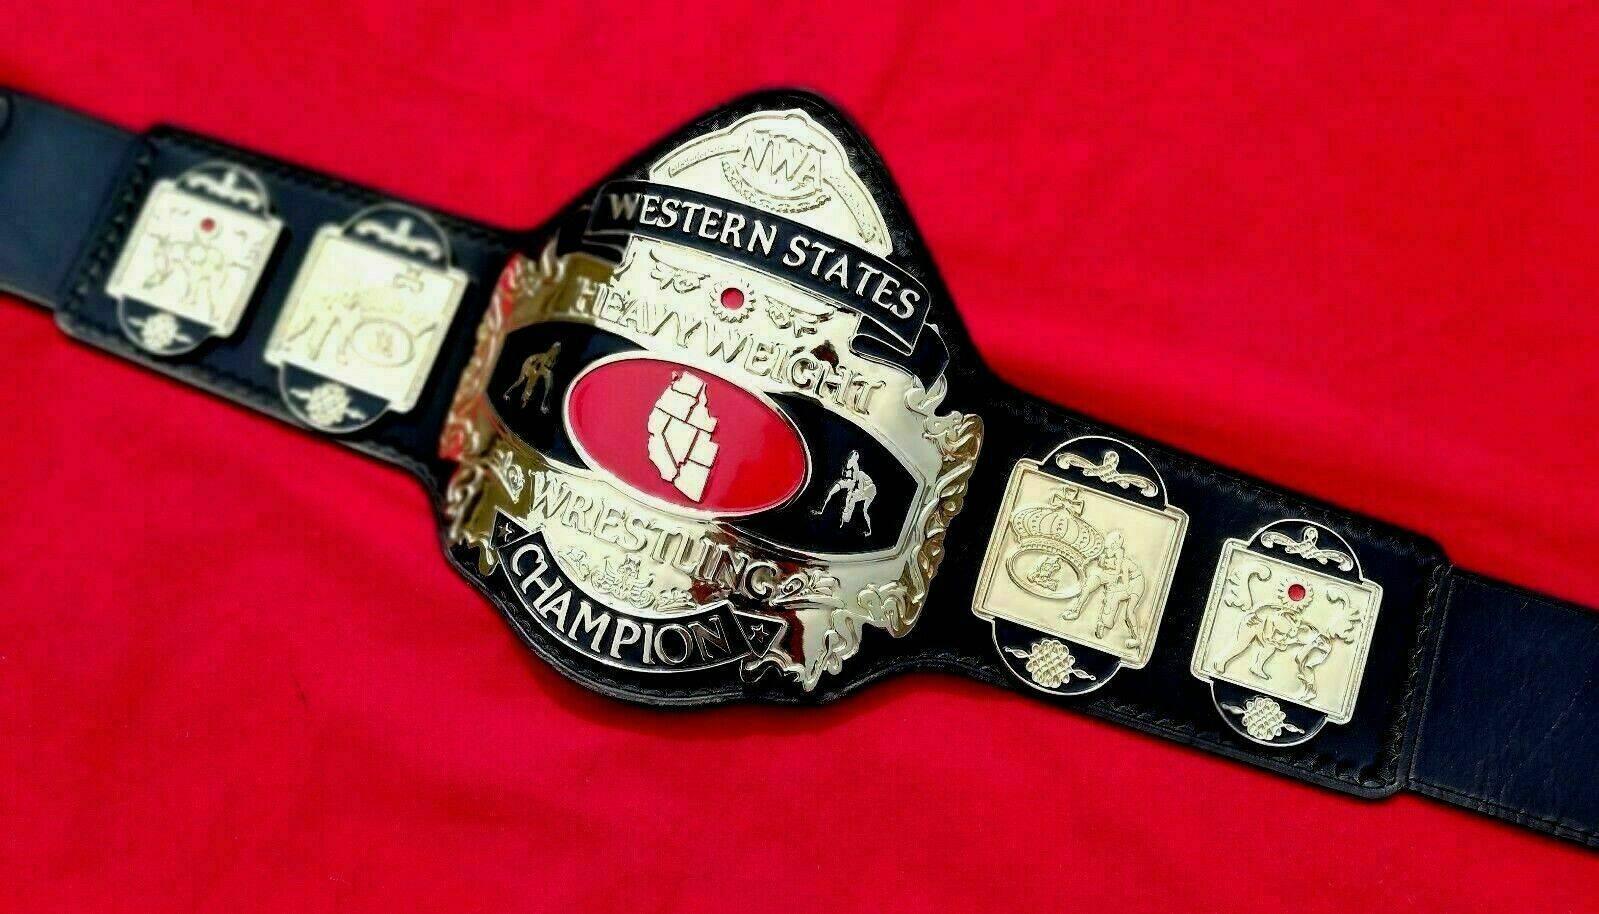 NWA WESTERN STATES HEAVYWEIGHT 24K GOLD Zinc Championship Belt